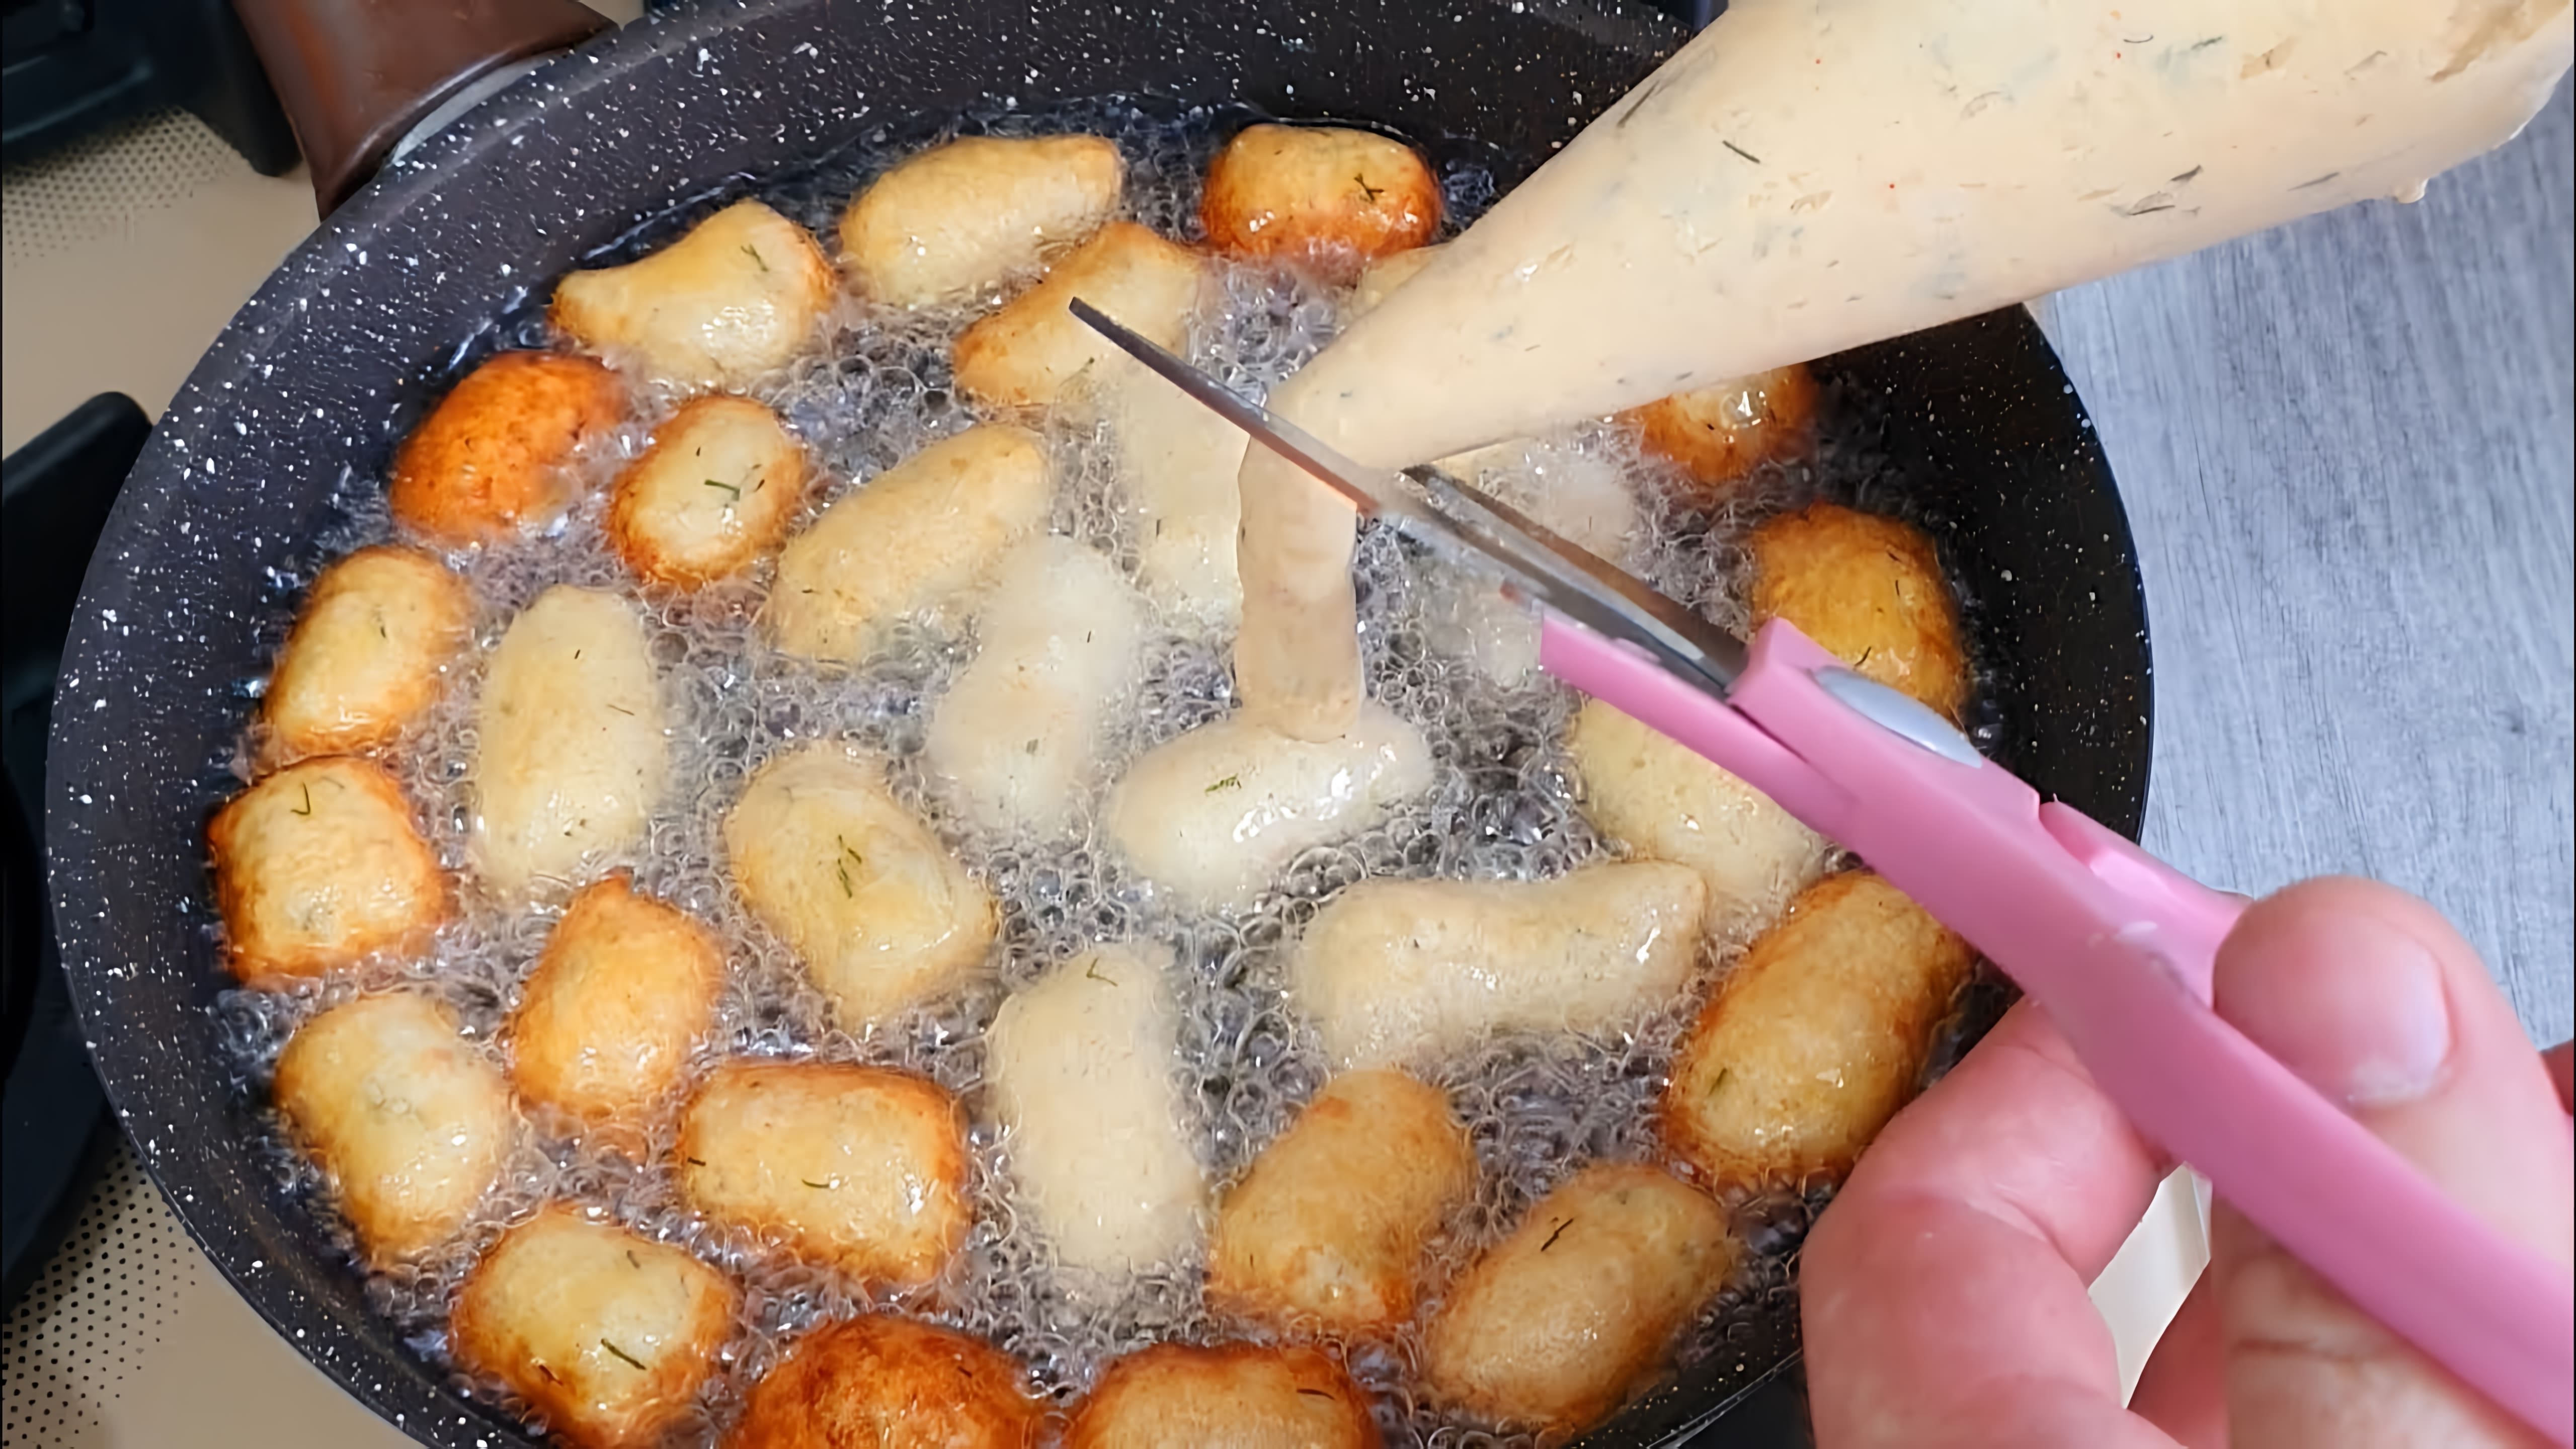 Заголовок: "Как приготовить вкусные и дешевые чипсы из картофеля"

Содержание видео-ролика:

1